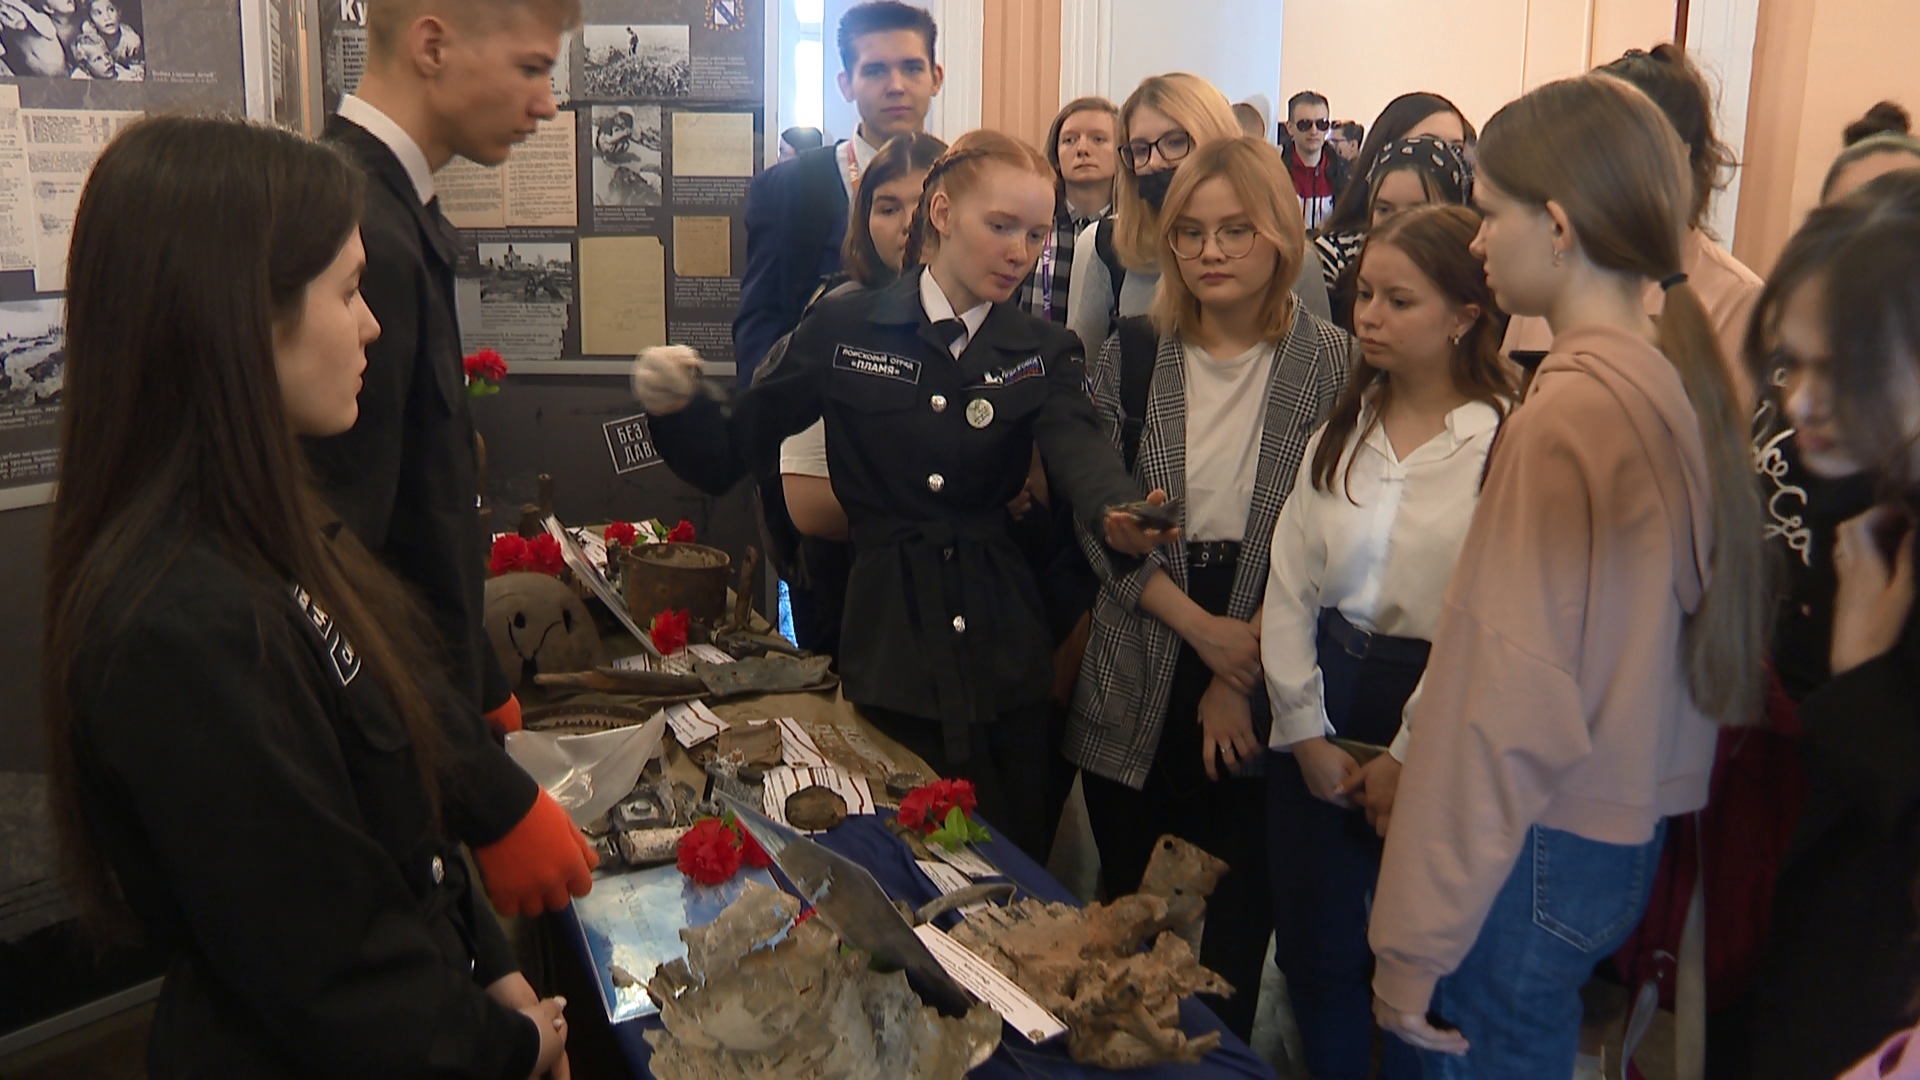 Дорогу молодым: студенческие организации в Челябинске показывают, на что способны